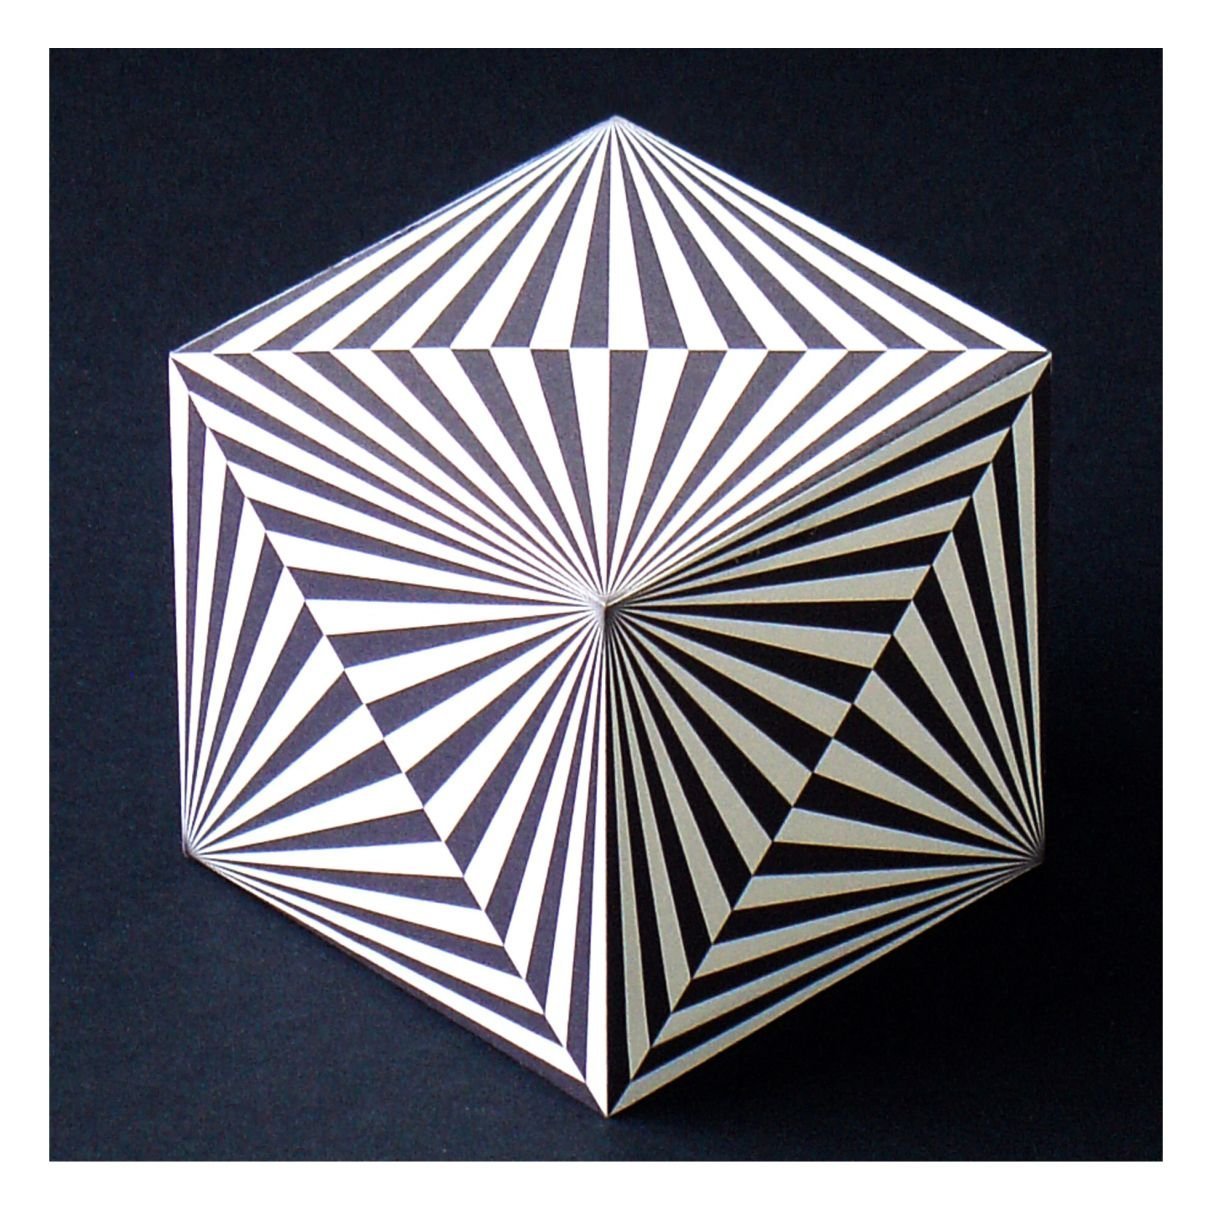 Объемная форма куба. Трехмерные геометрические фигуры. Необычные геометрические формы. Геометрические оптические иллюзии. Объемные оптические иллюзии.